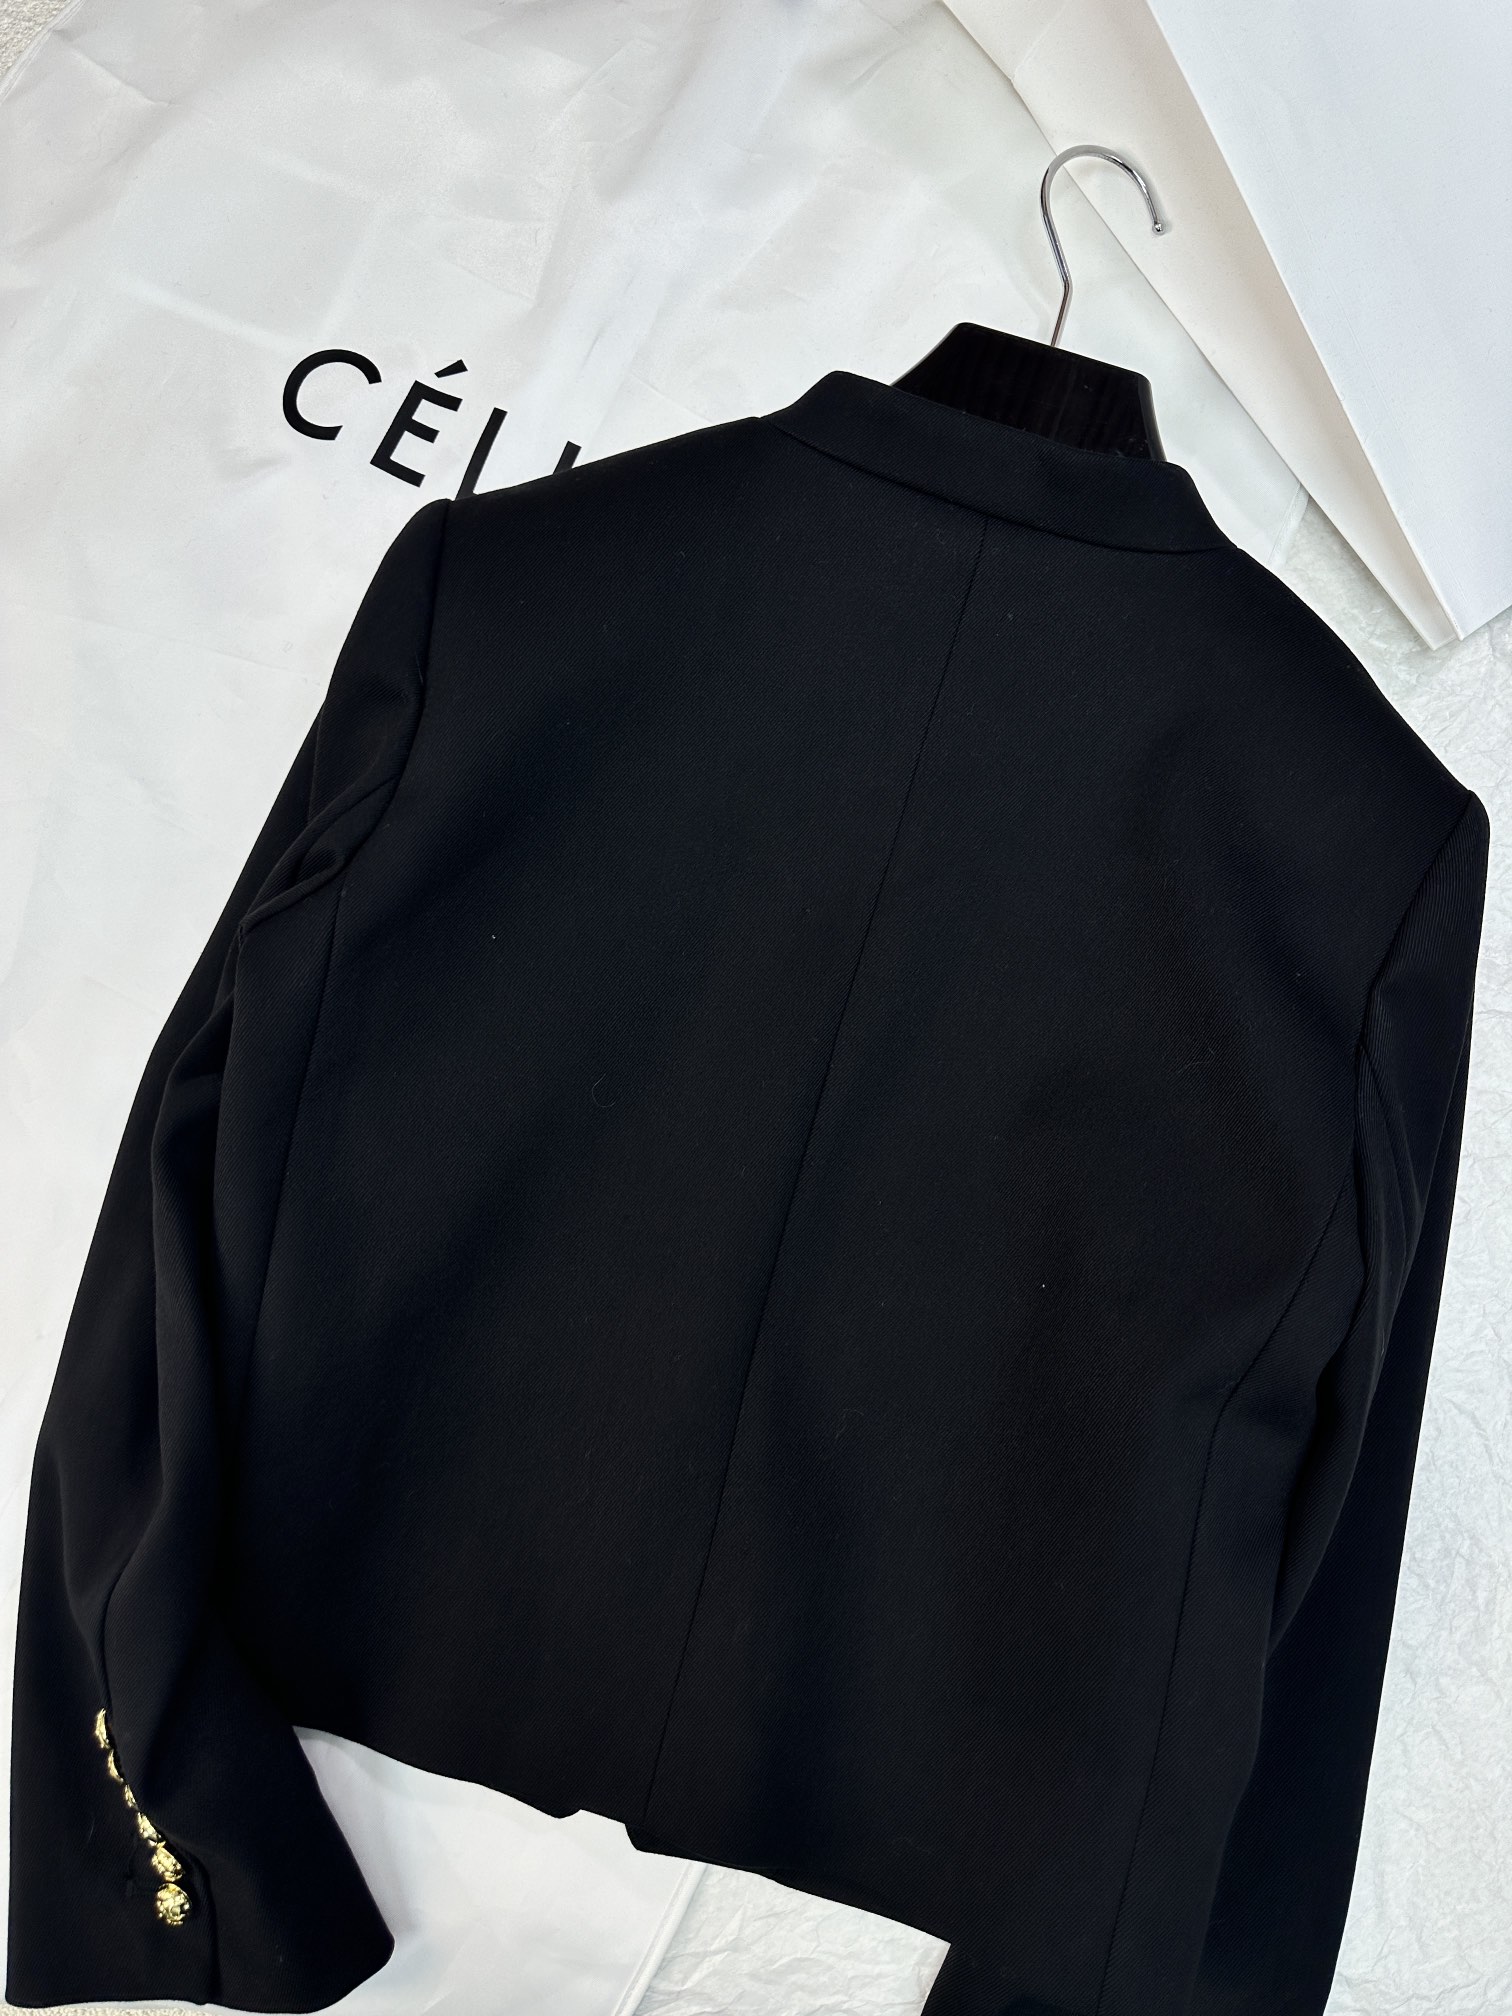 激安大特価最新作の セリーヌツイードジャケットコピー 暖かい トップス アウター ファッション 高級品 ブラック_2